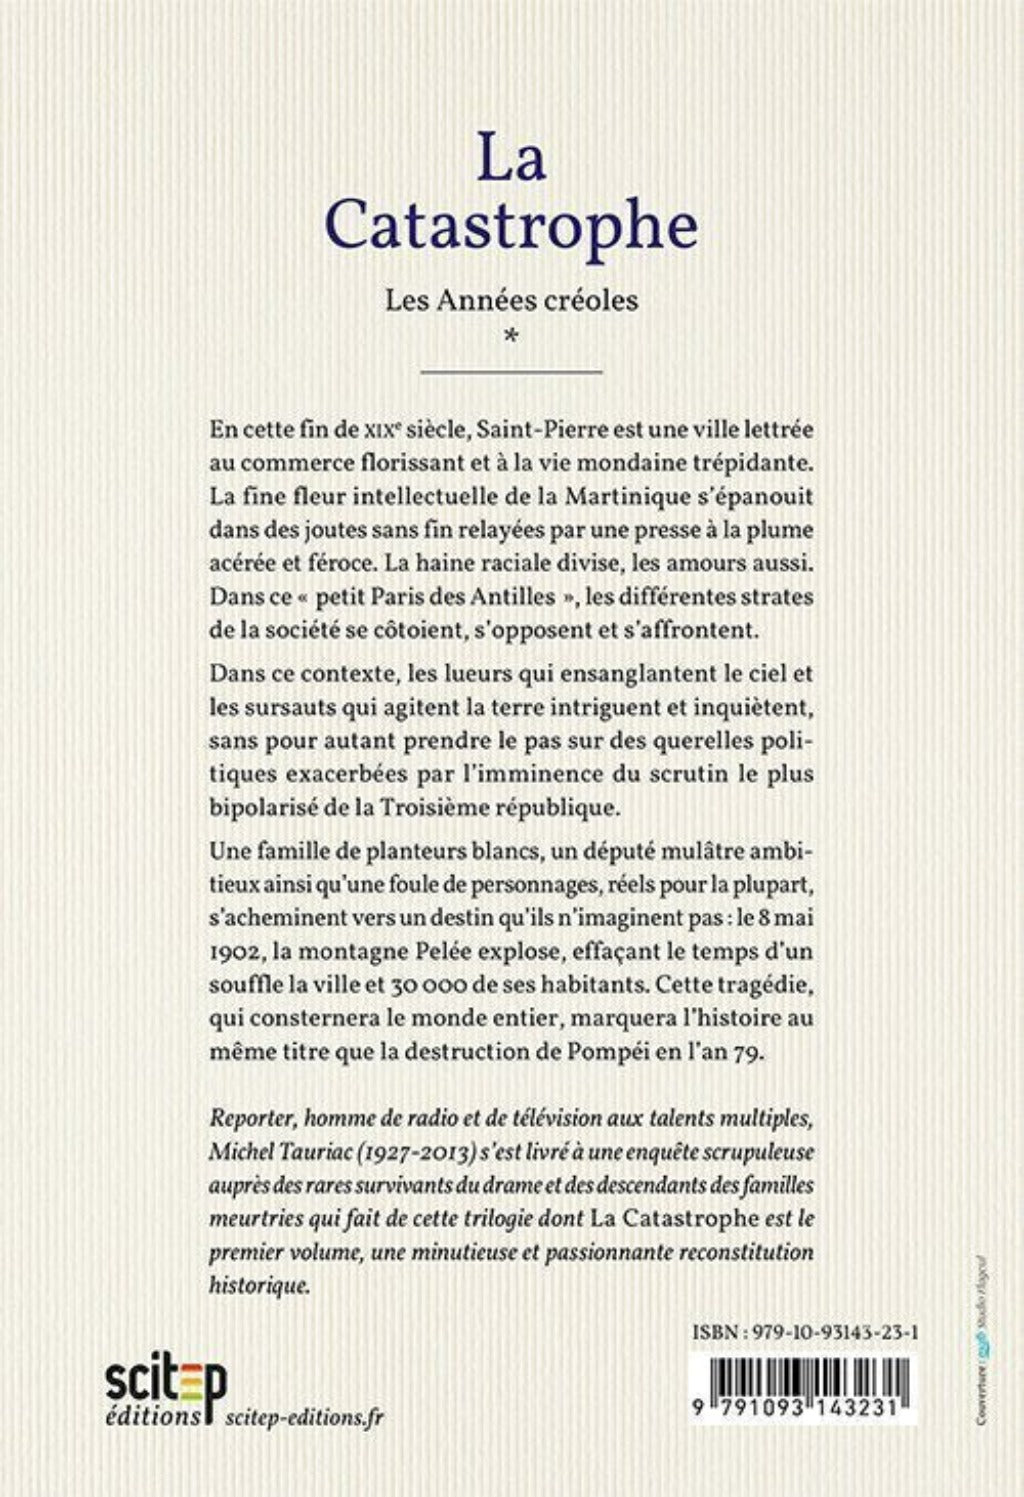 Quatrième de couverture du livre La catastrophe auteur Michel Tauriac éditeur Scitep édition